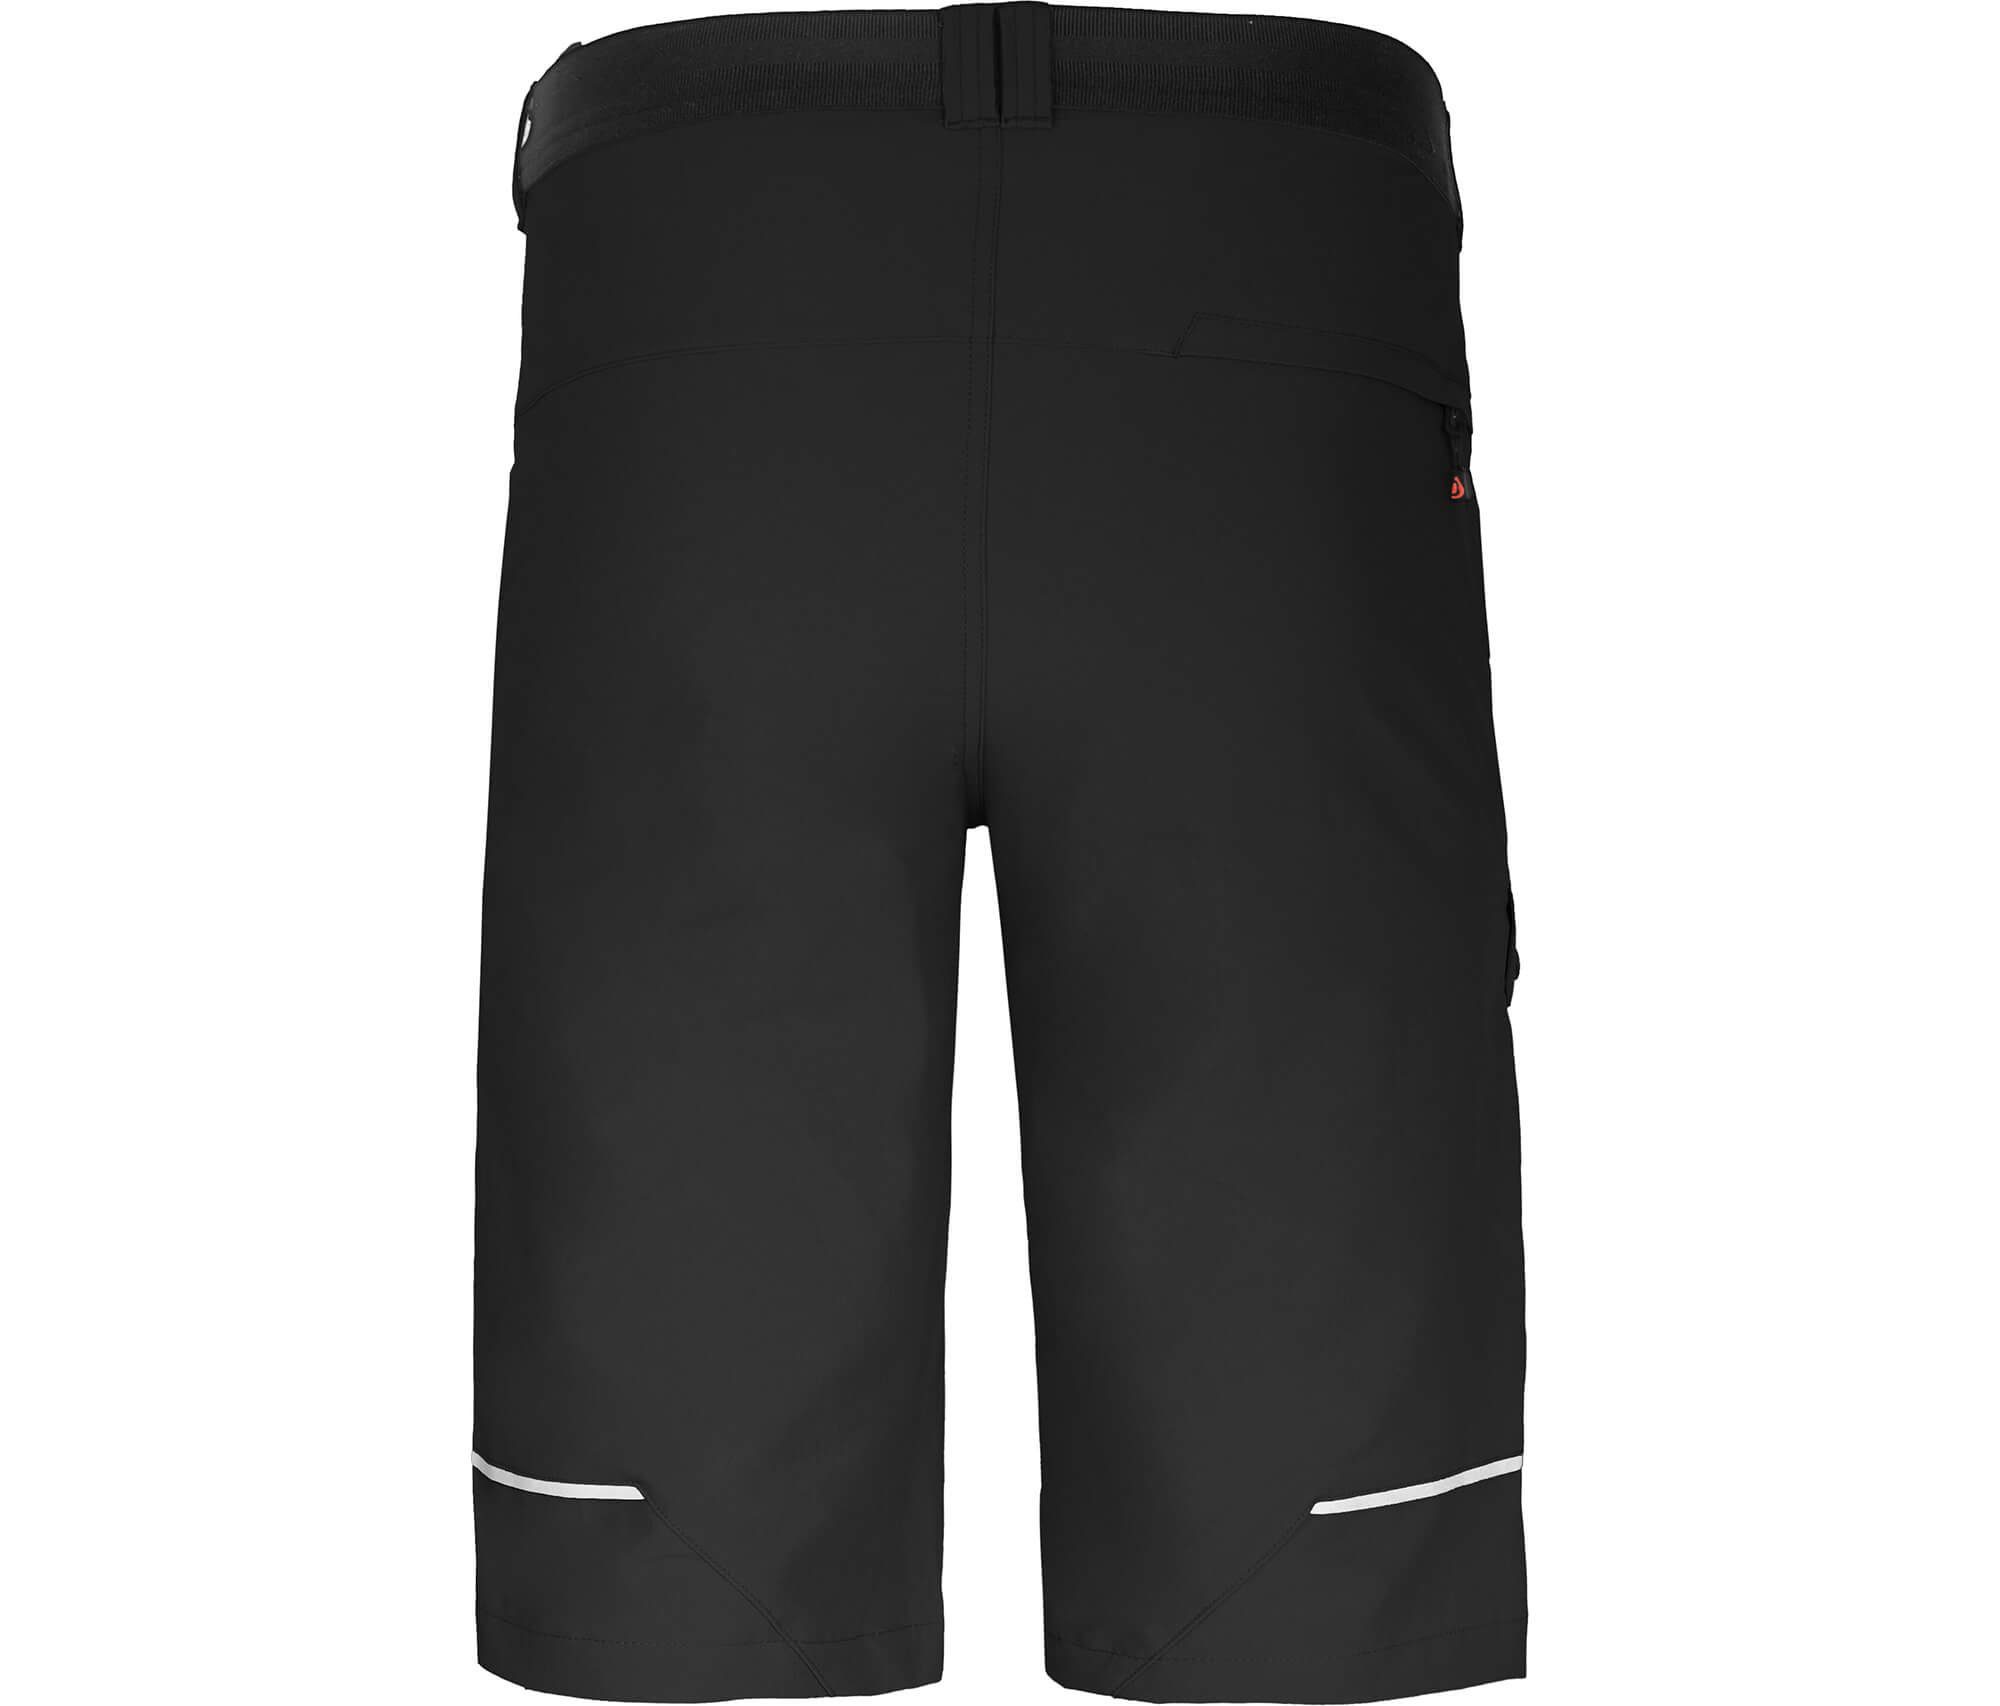 Bermuda FROSLEV Outdoorhose Taschen, Wandershorts, Normalgrößen recycelt, Bergson Herren elastisch, schwarz 8